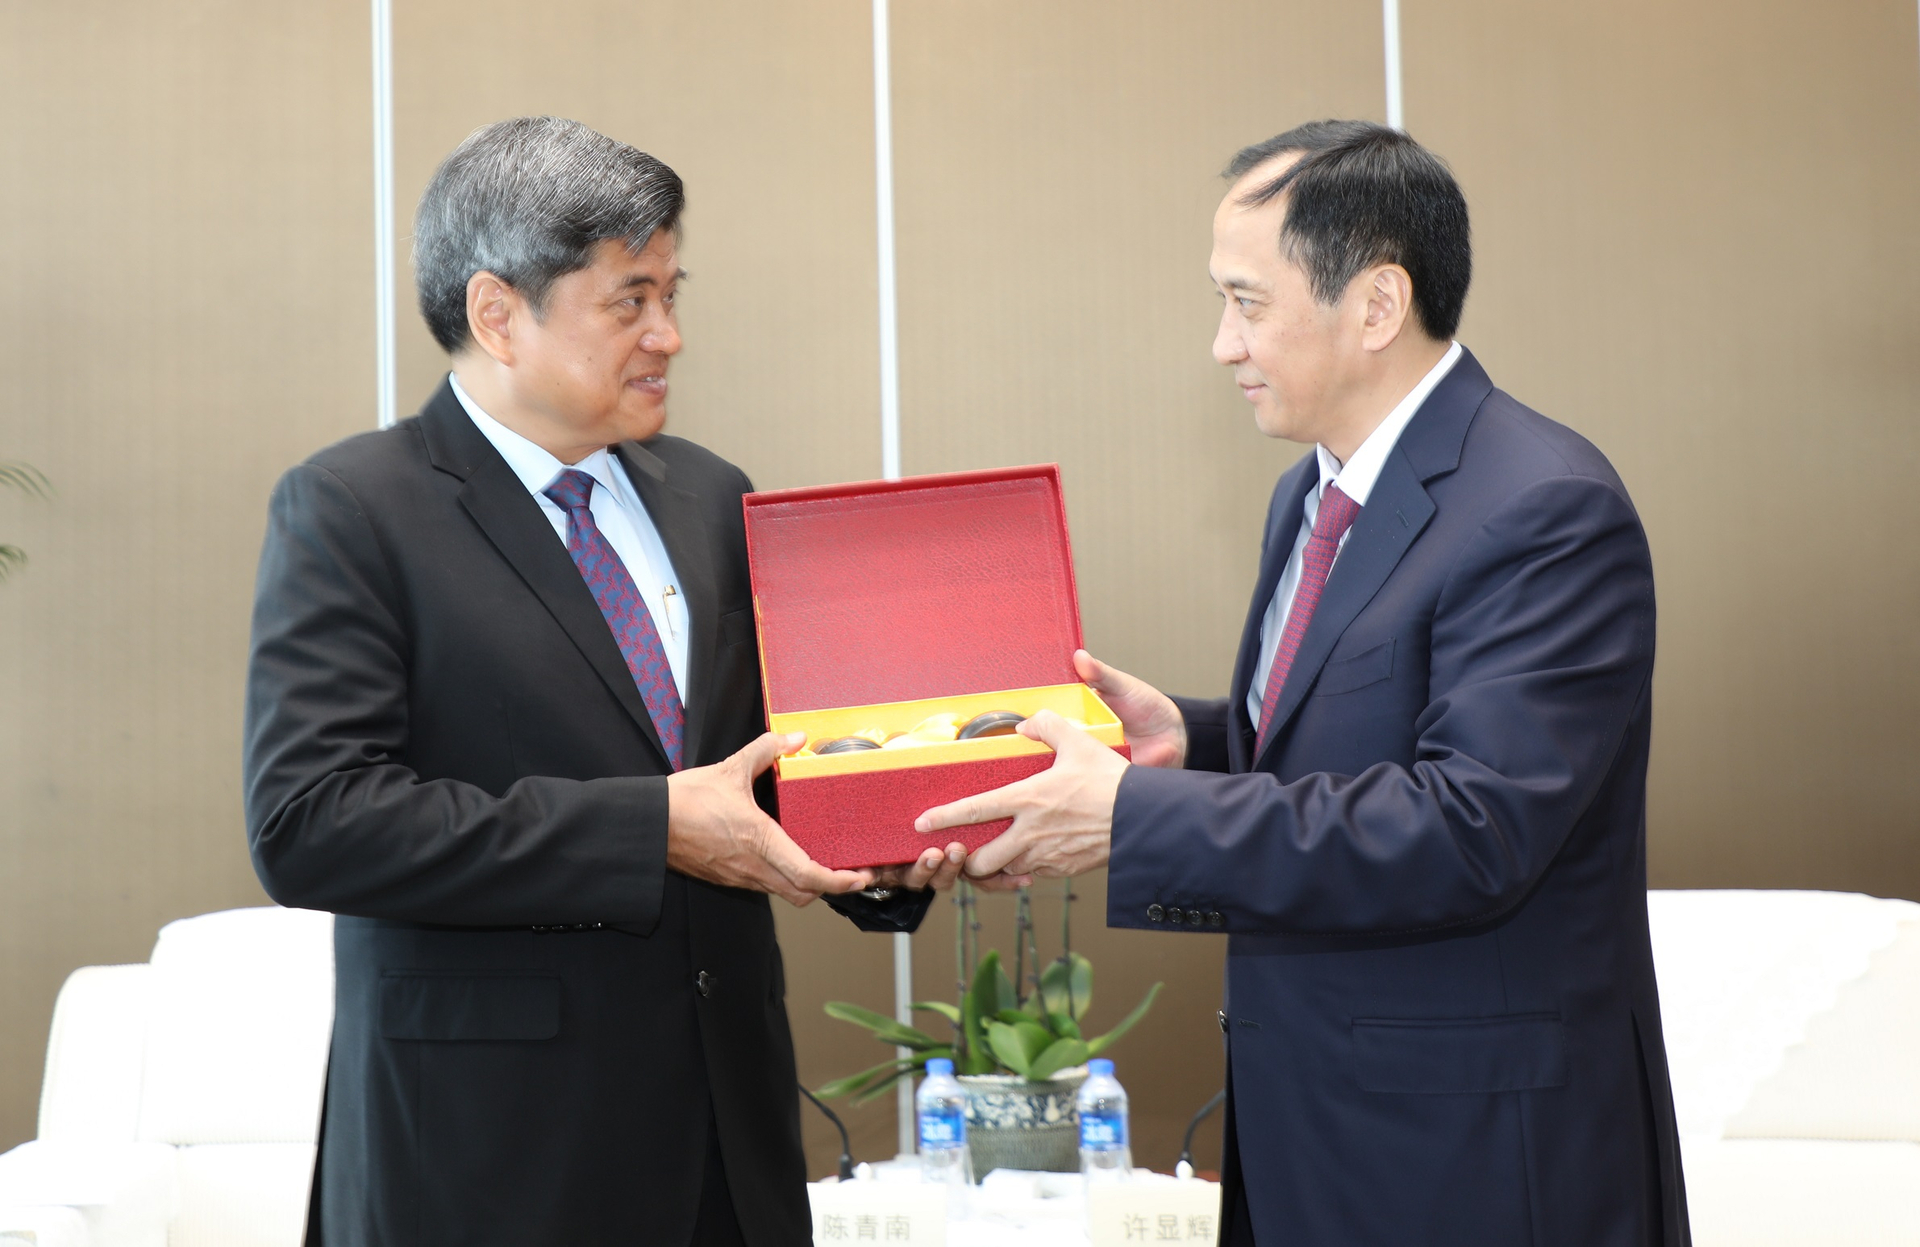 Thứ trưởng Trần Thanh Nam và Phó Chủ tịch tỉnh Quảng Tây, ông Hứa Hiển Huy trao quà lưu niệm. Ảnh: Đặng Lôi Nhã.